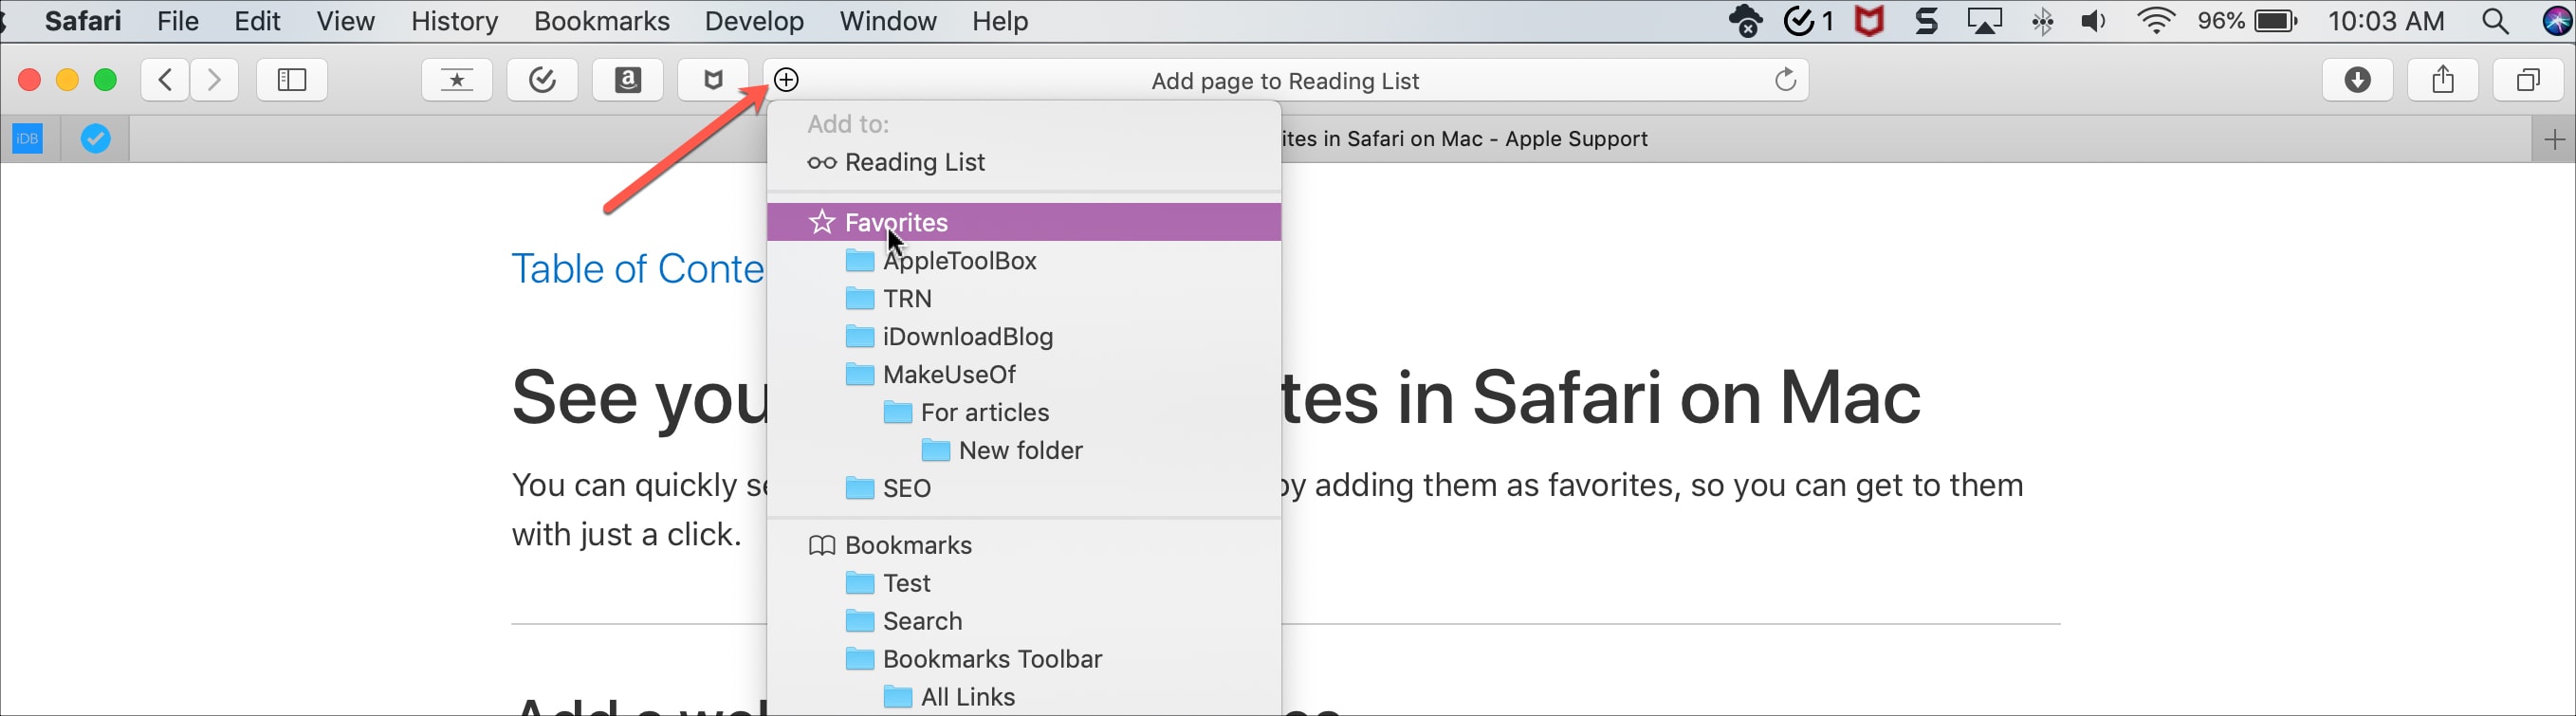 safari for mac 10.9.1